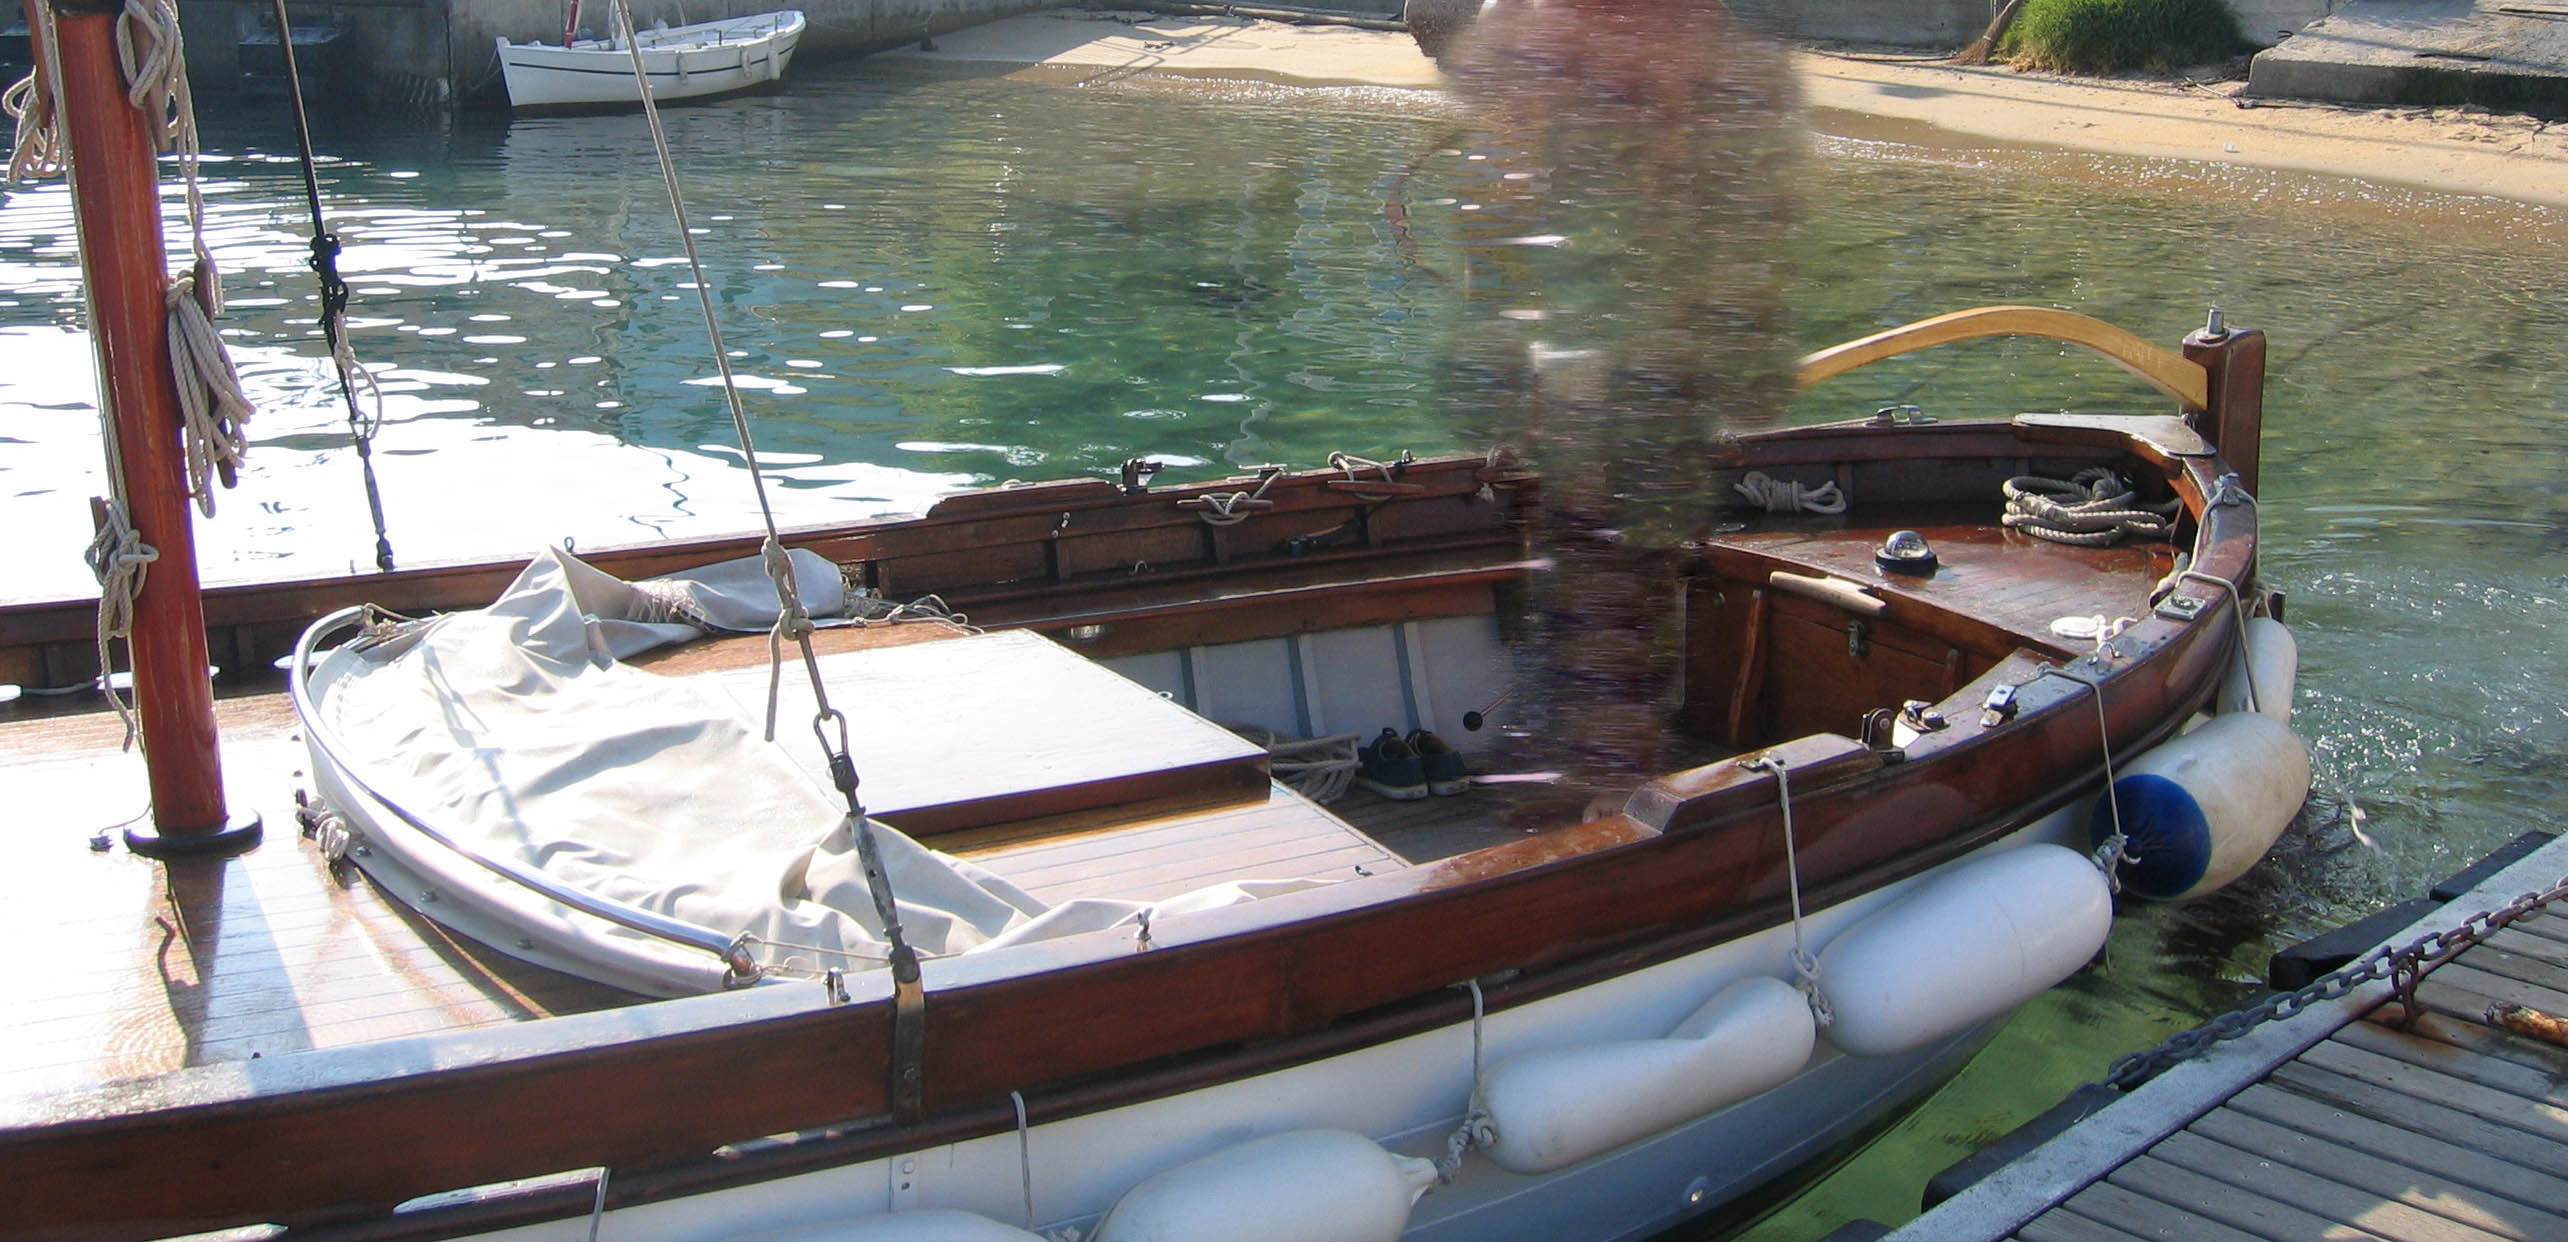 gozzo legno vela latina livorno boats barco bateaux boat sail